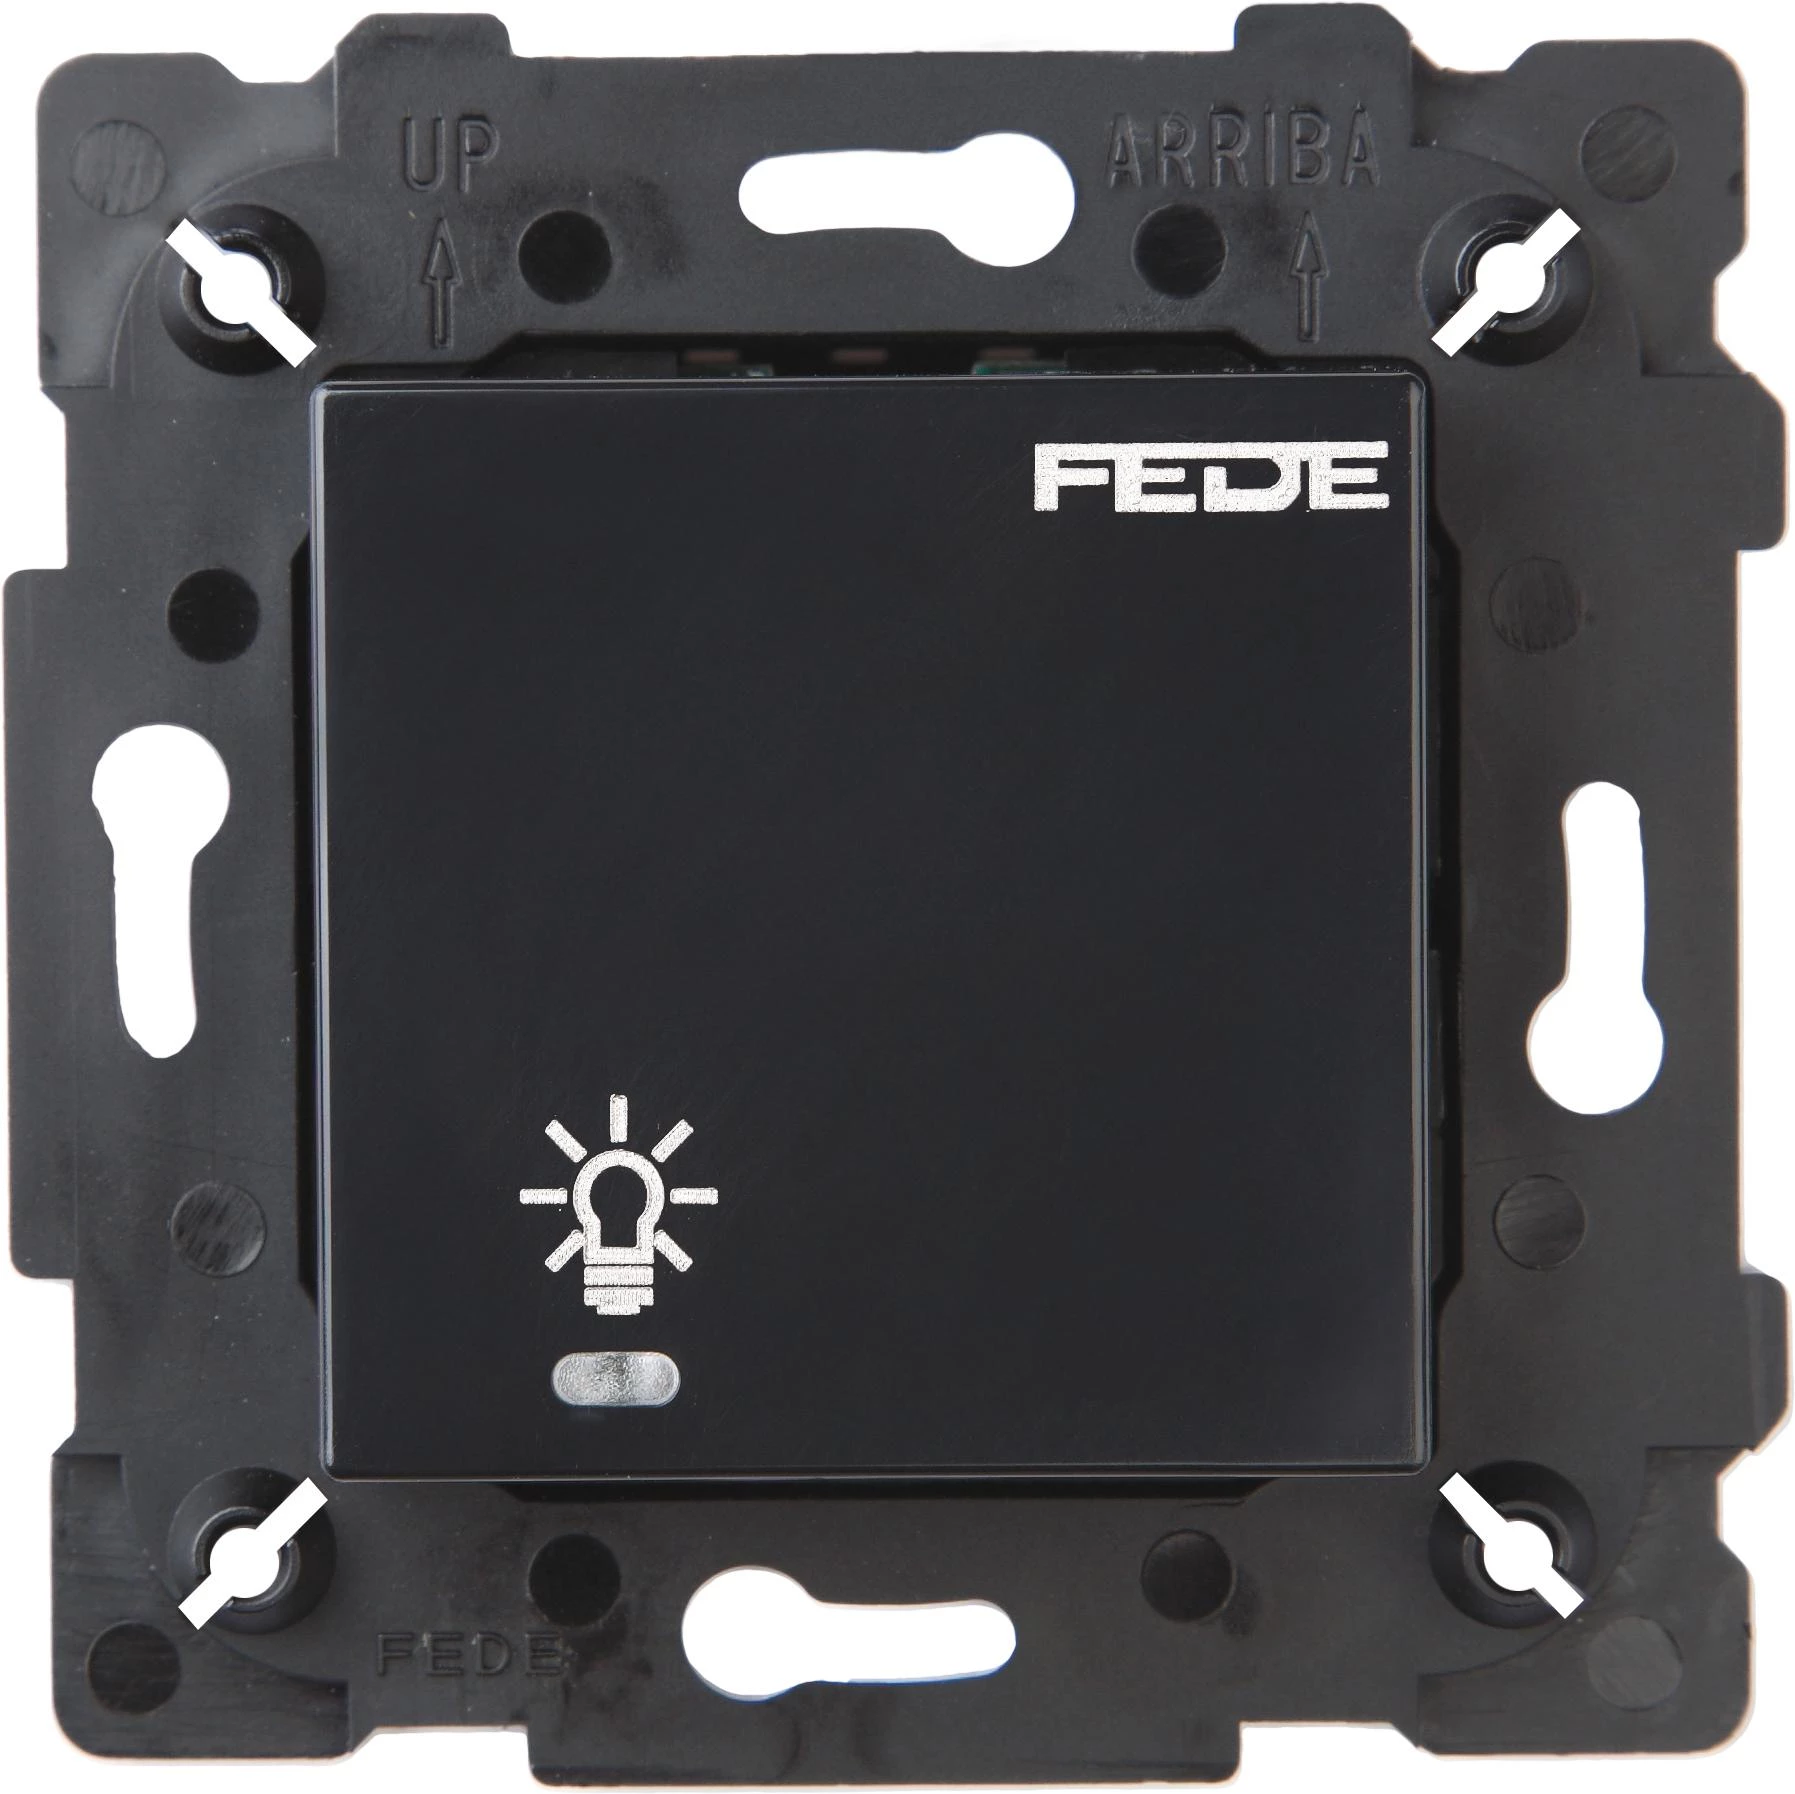  артикул FD28601-M название FEDE Черный Сенсорный одноклавишный выключатель 600 Вт с подсветкой Black (Negro)